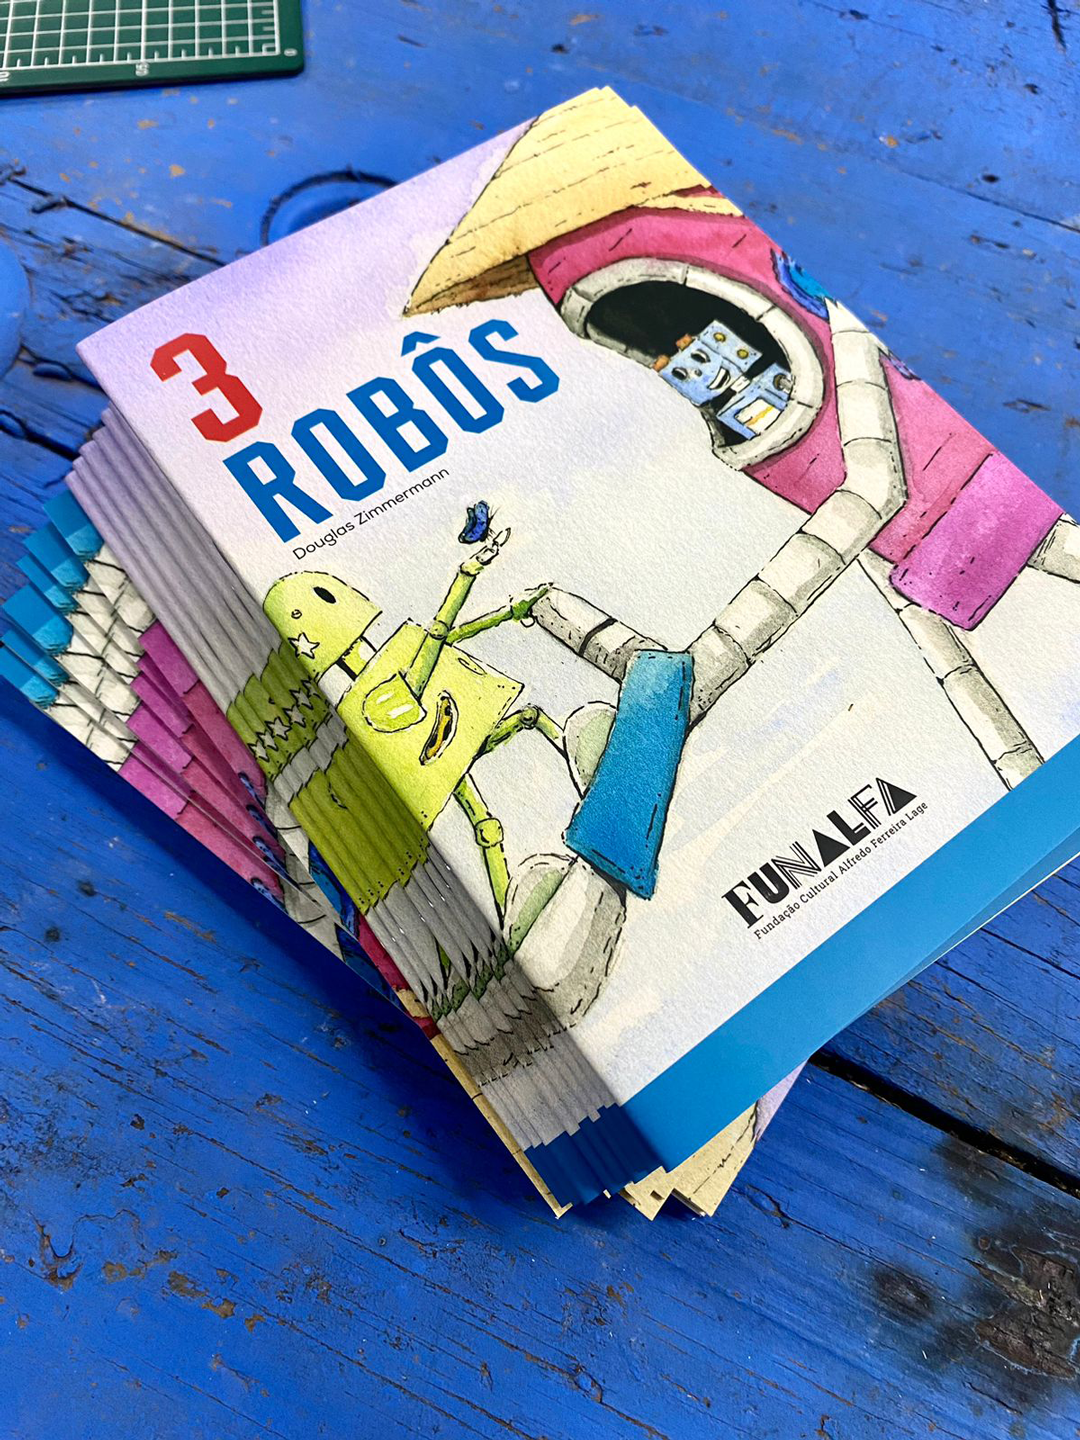 Forum da Cultura recebe lançamento do livro infantil “3 Robôs”, do escritor e artista visual Douglas Zimmermann